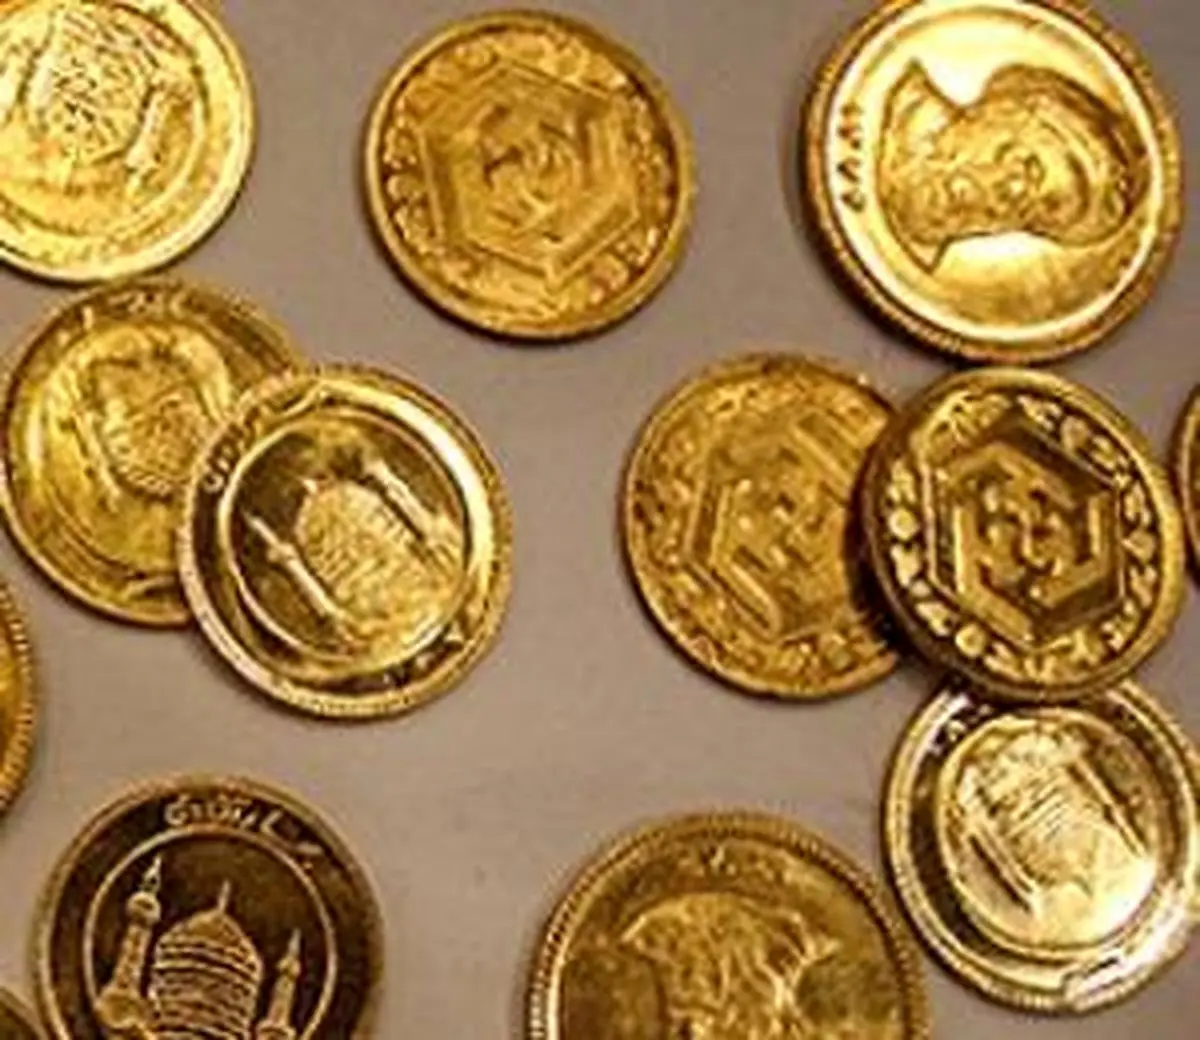 
آخرین نوسانات  قیمت سکه در بازار